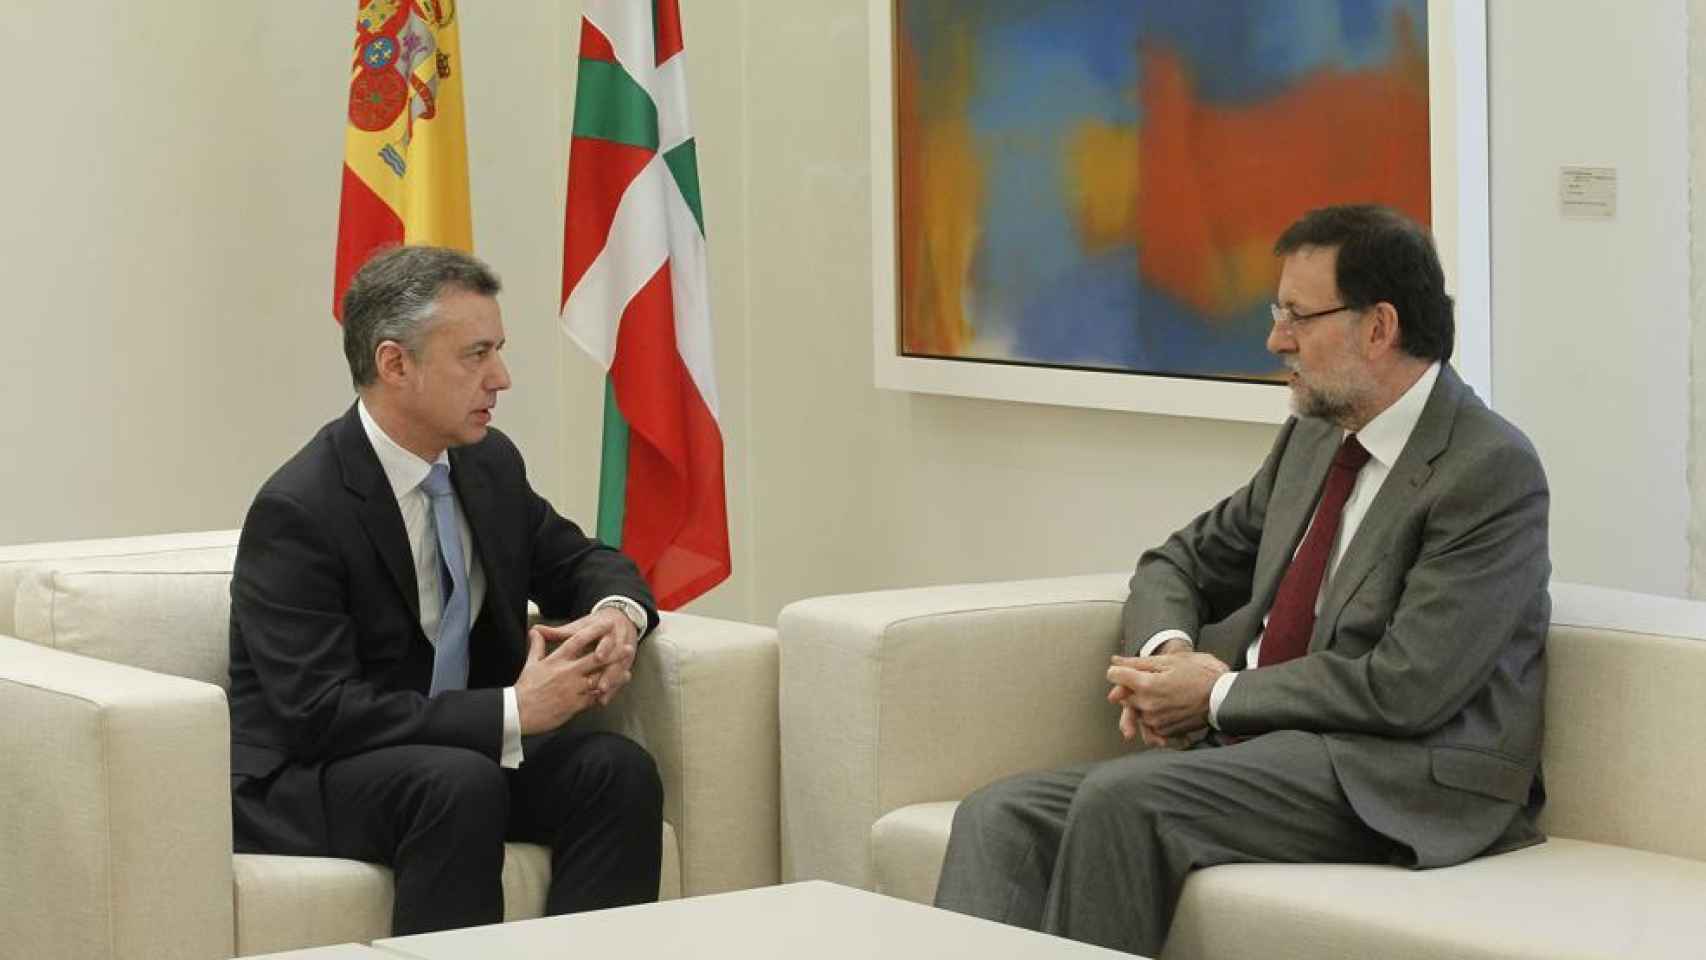 El lehendakari, Íñigo Urkullu, y el presidente del Gobierno, Mariano Rajoy